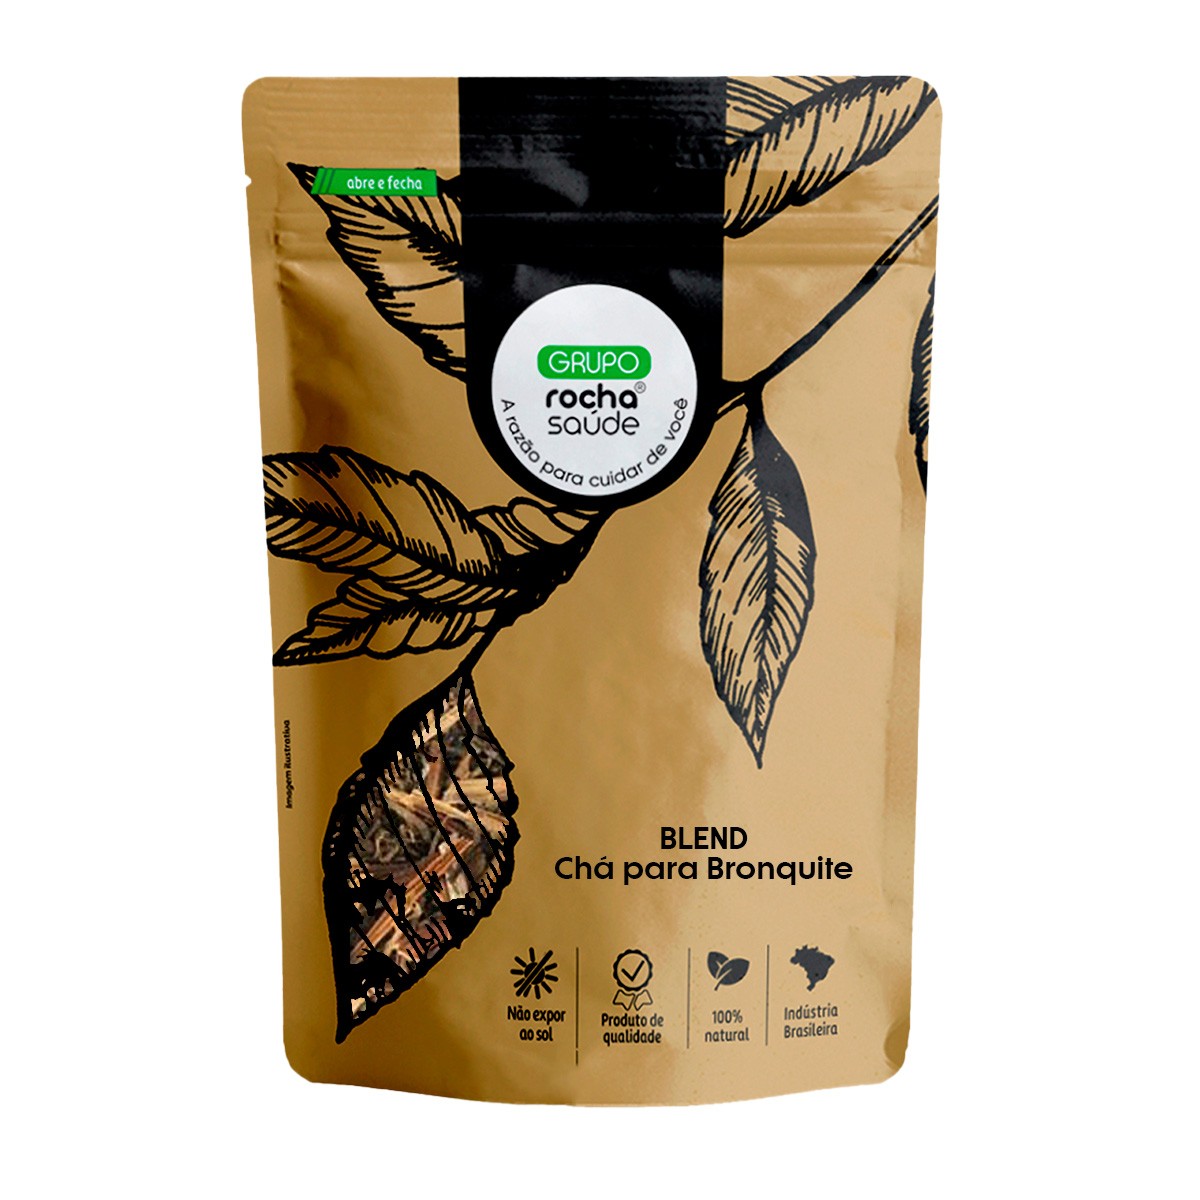 Blend – Chá para Bronquite - 100% Natural - Alta Qualidade